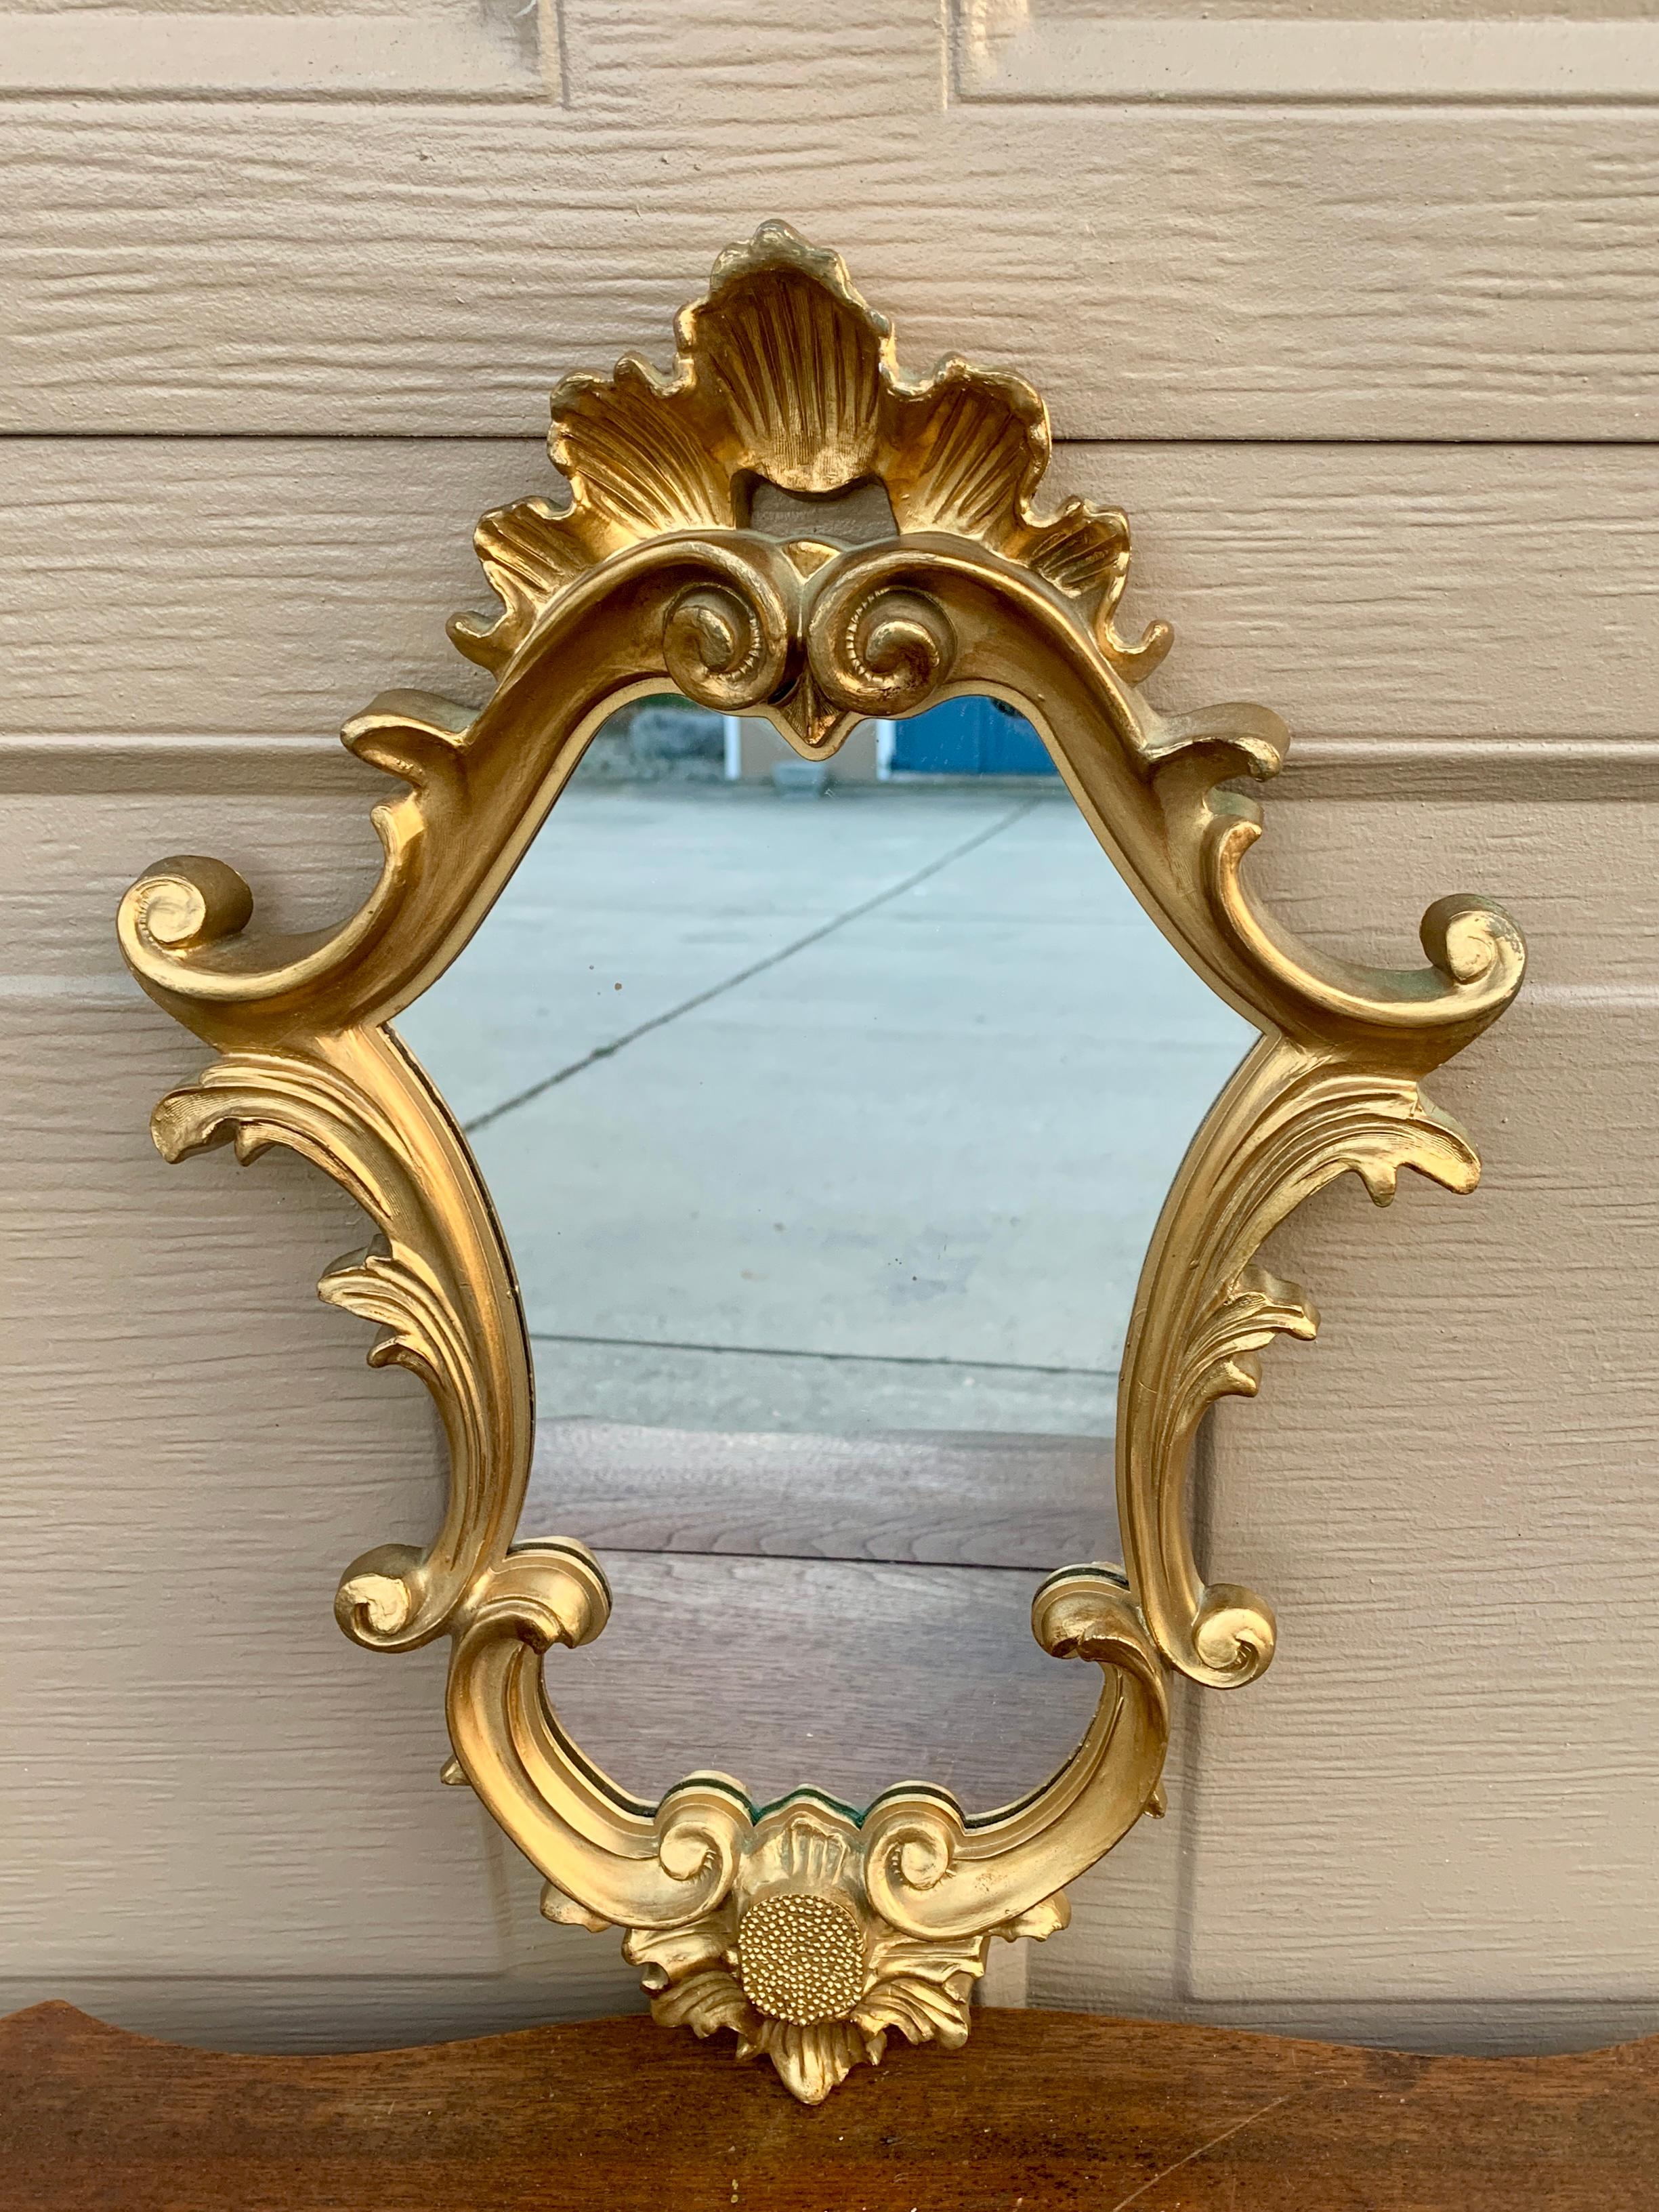 Magnifique miroir encadré de bois doré de style rococo baroque

Italie, Milieu du 20ème siècle

Mesures : 11 